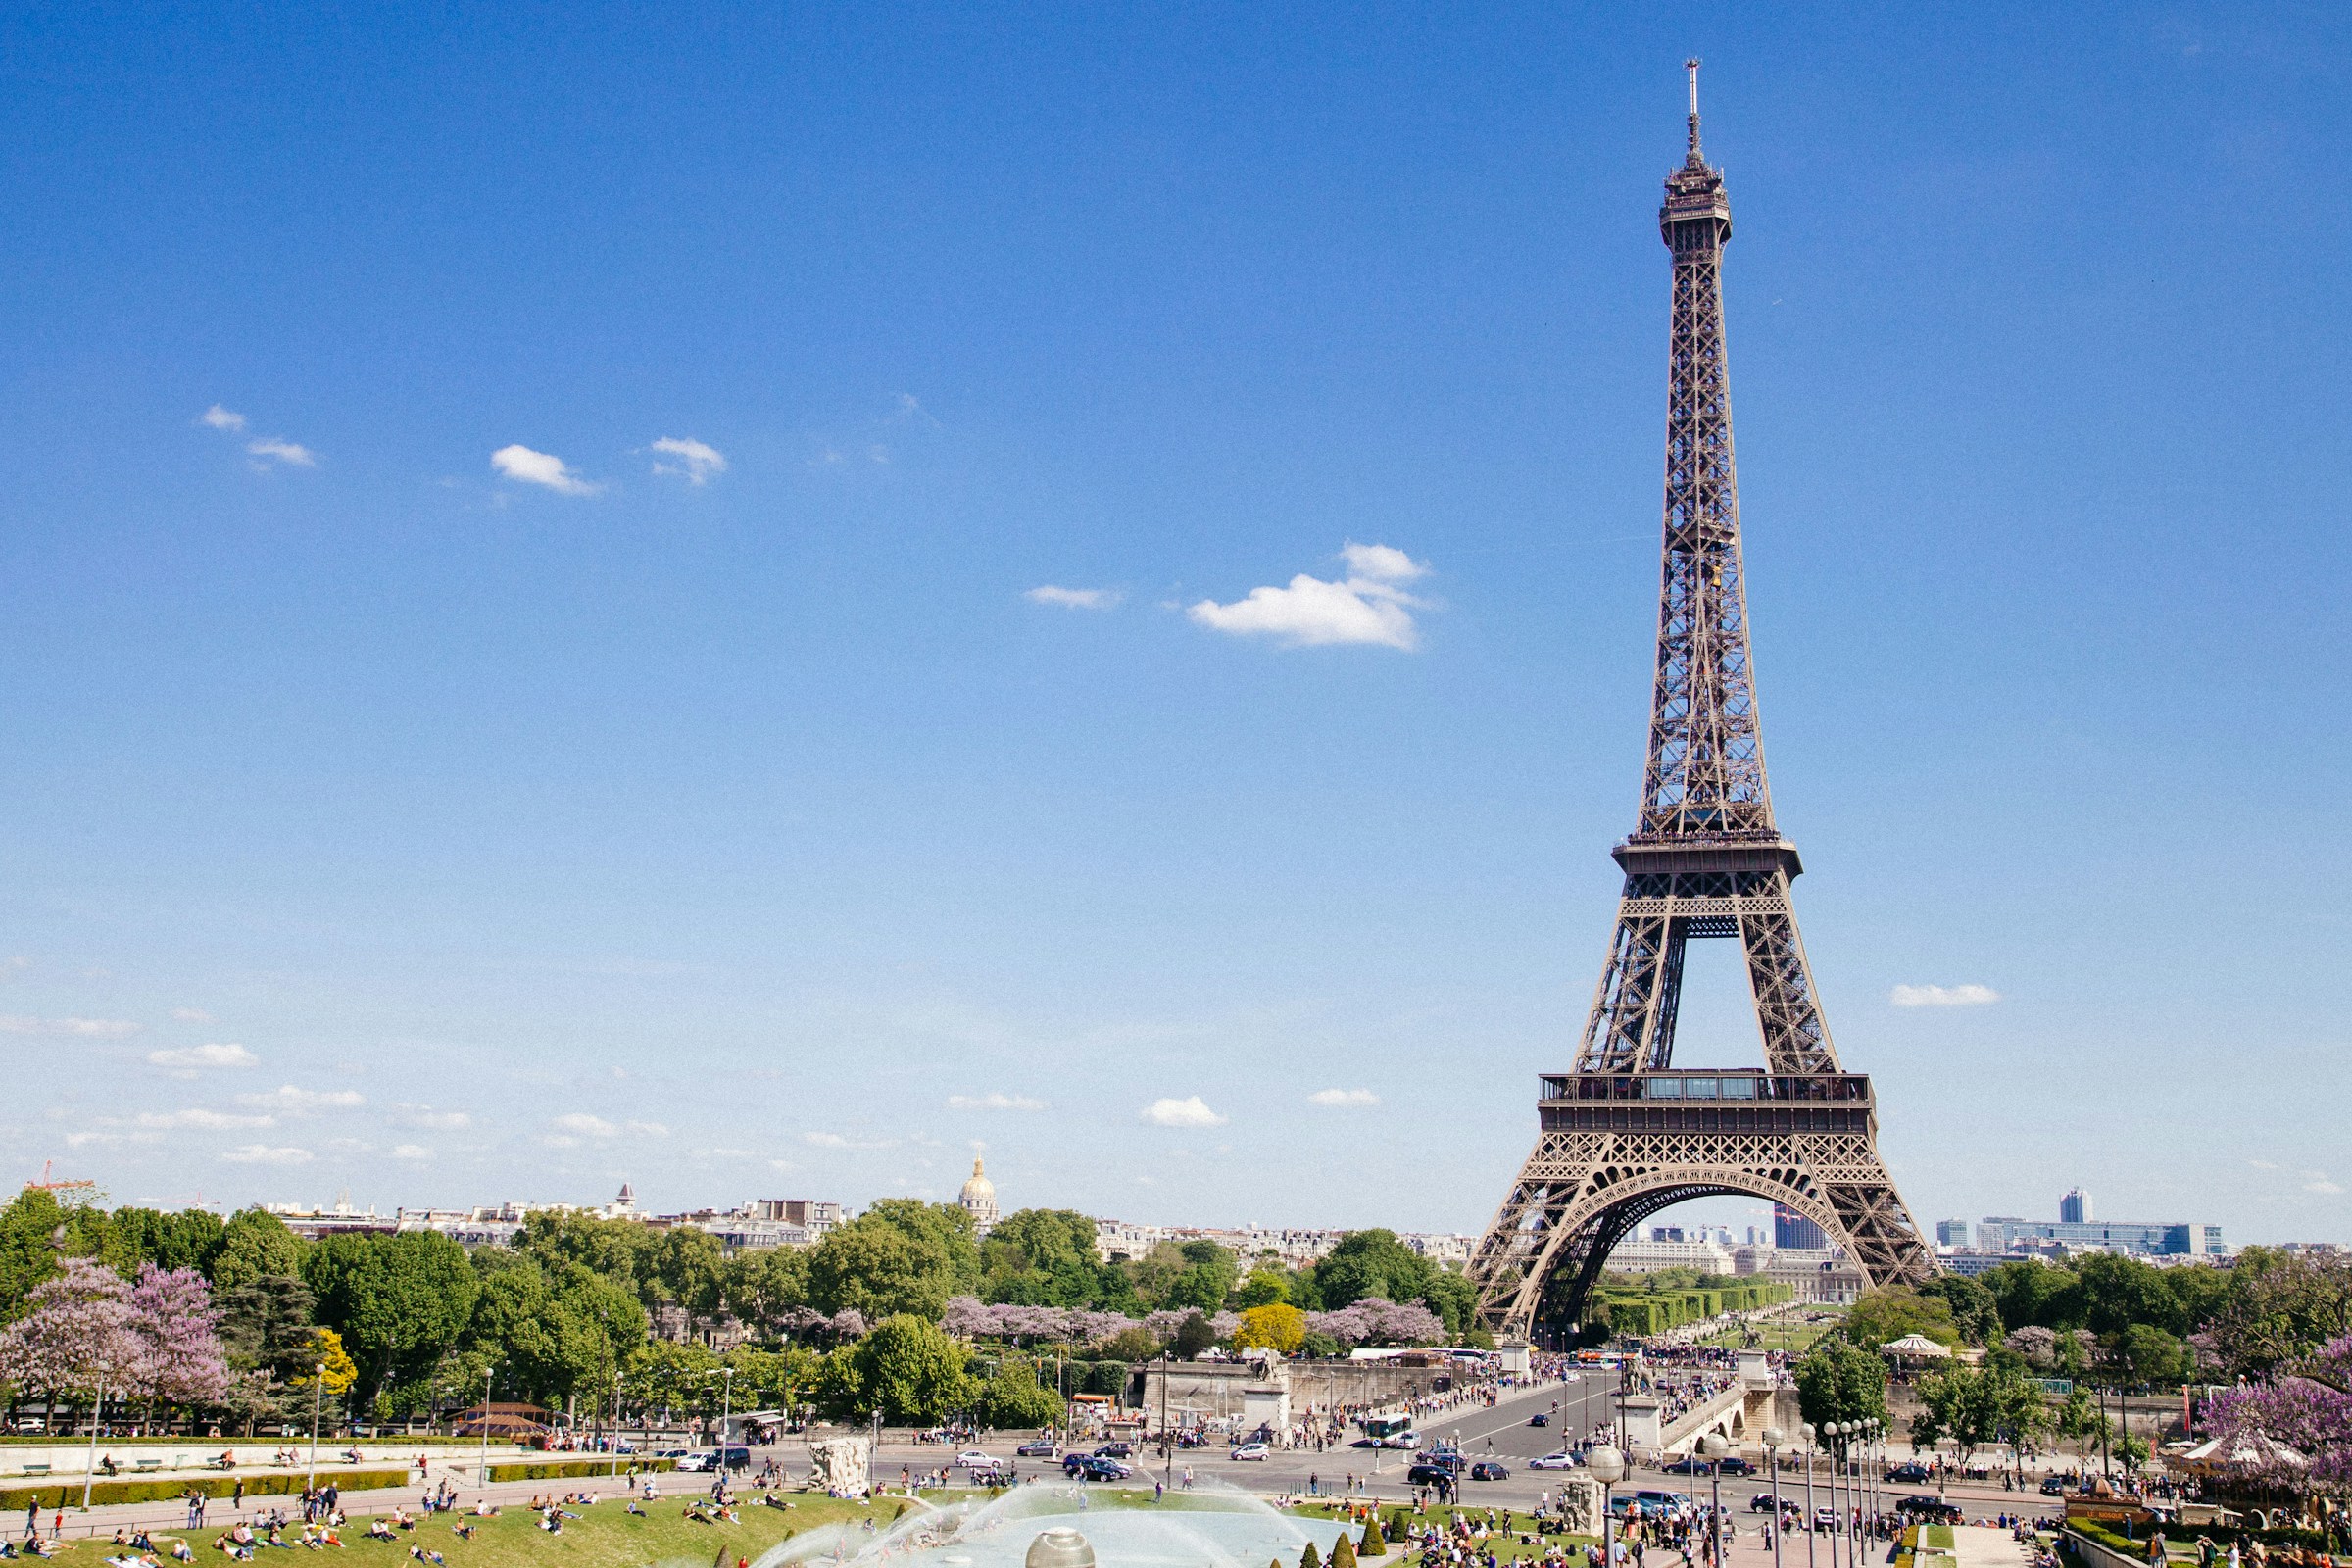 The Eiffel Tower in Paris | Source: Unsplash